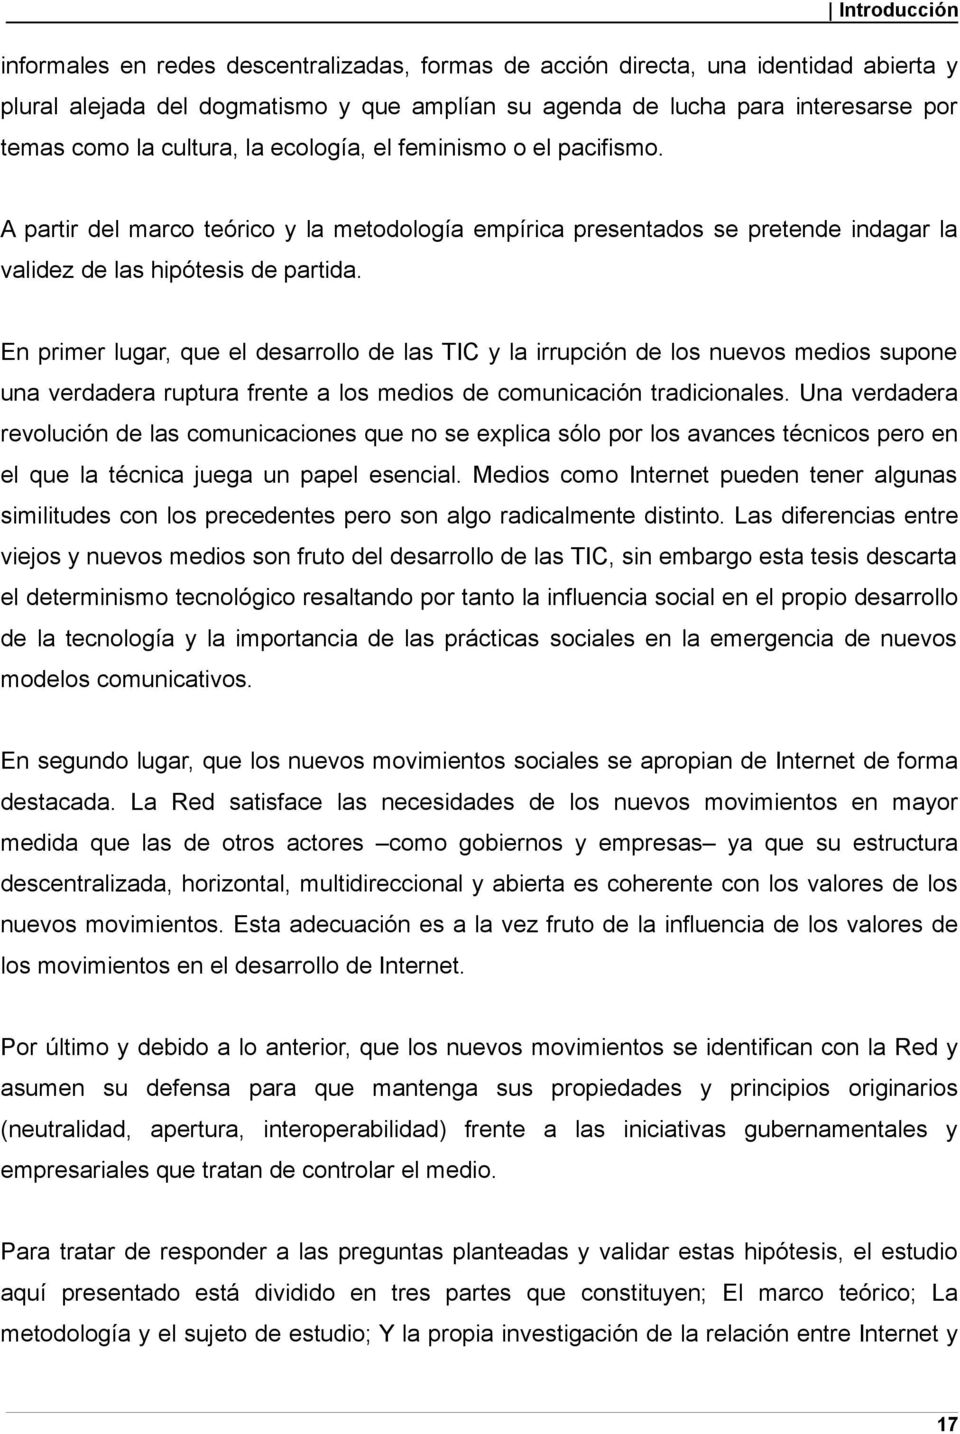 Universidad Complutense De Madrid Internet En Movimiento Nuevos